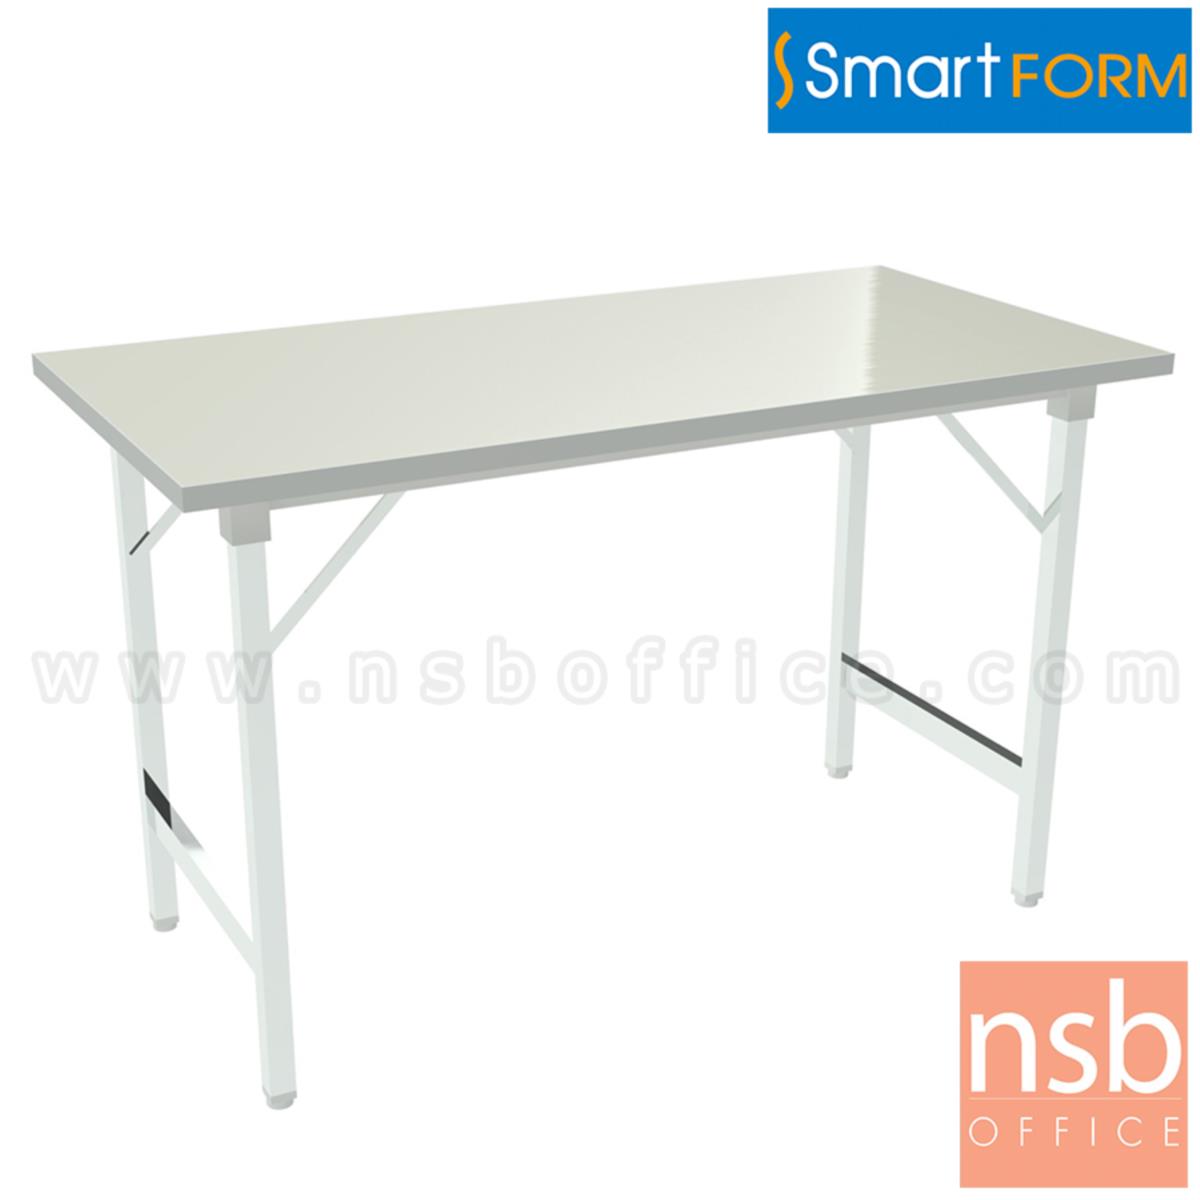 โต๊ะพับหน้าเหล็ก  ขนาด 150W, 180W (*75D) cm  ขาเหล็กชุบโครเมี่ยม